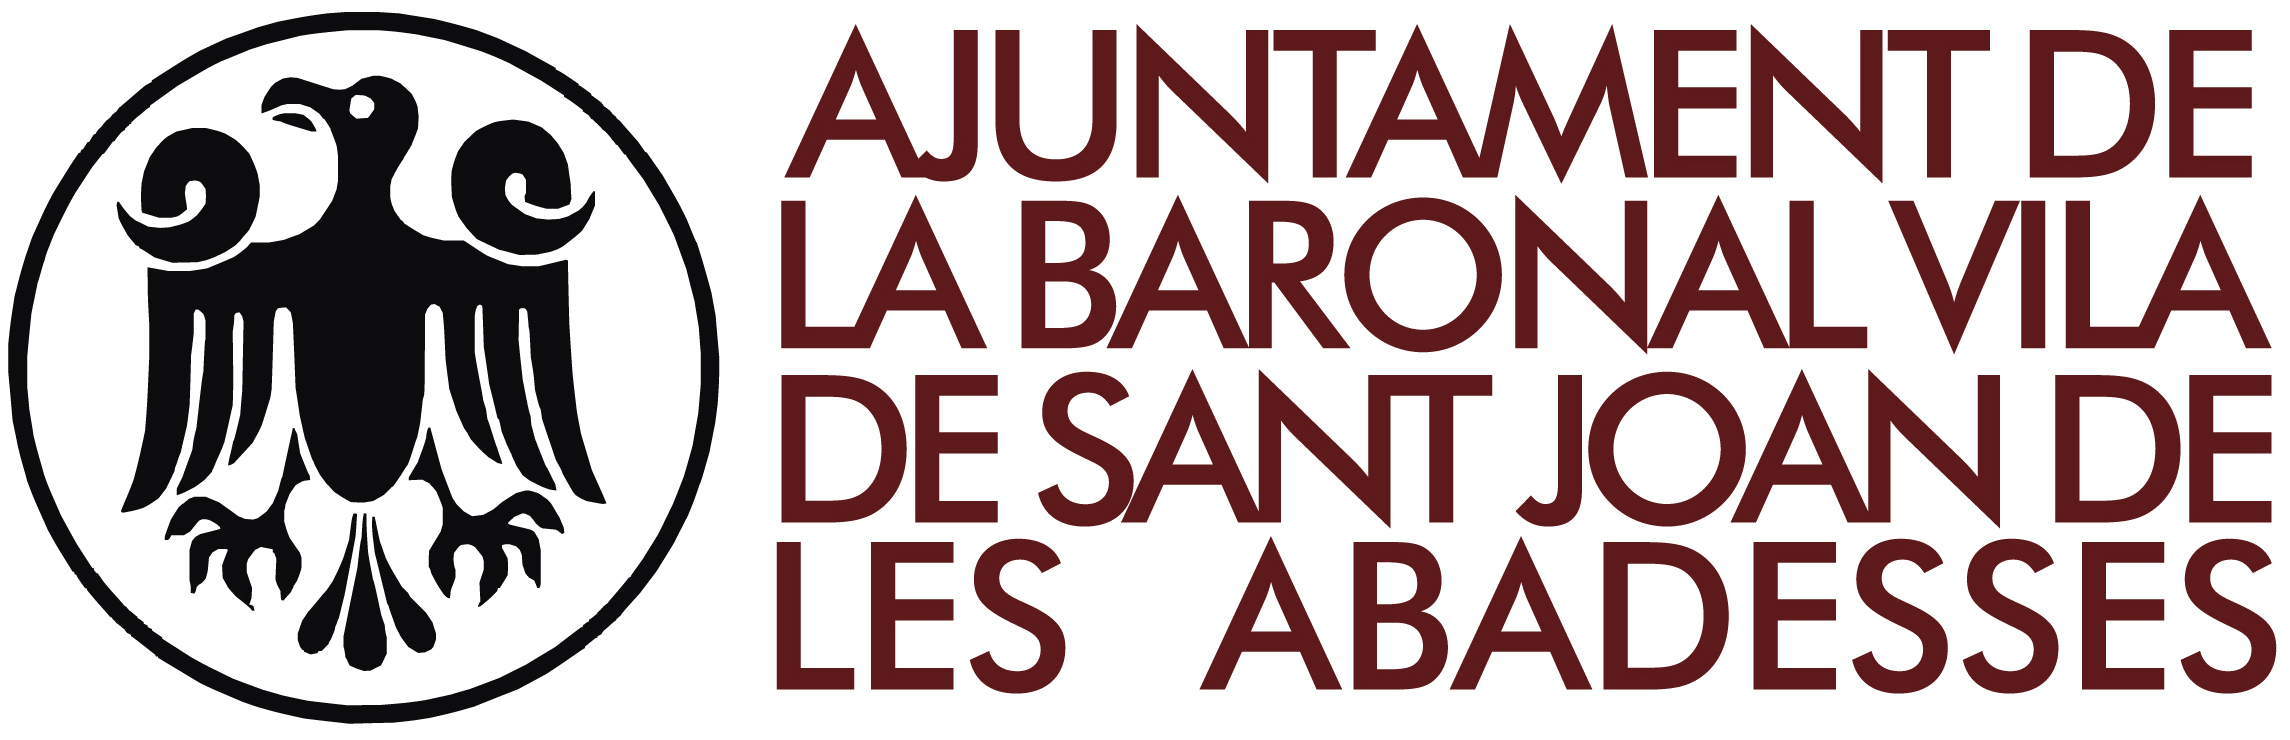 Ajuntament La Baronal Vila de Sant Joan de les Abadesseses